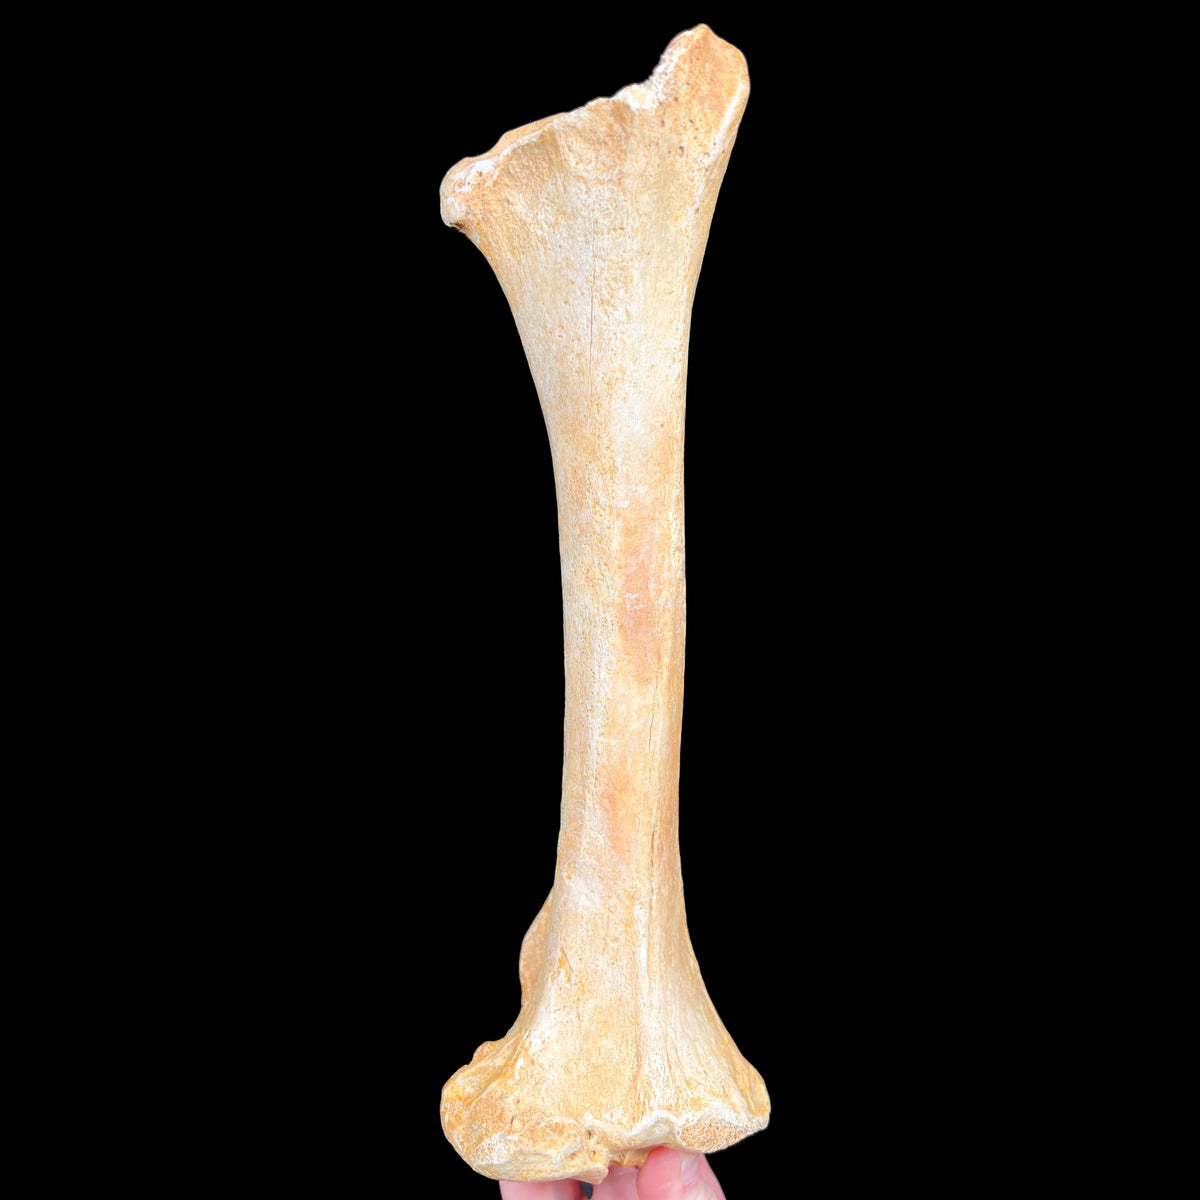 Ursus spelaeus fossil bone